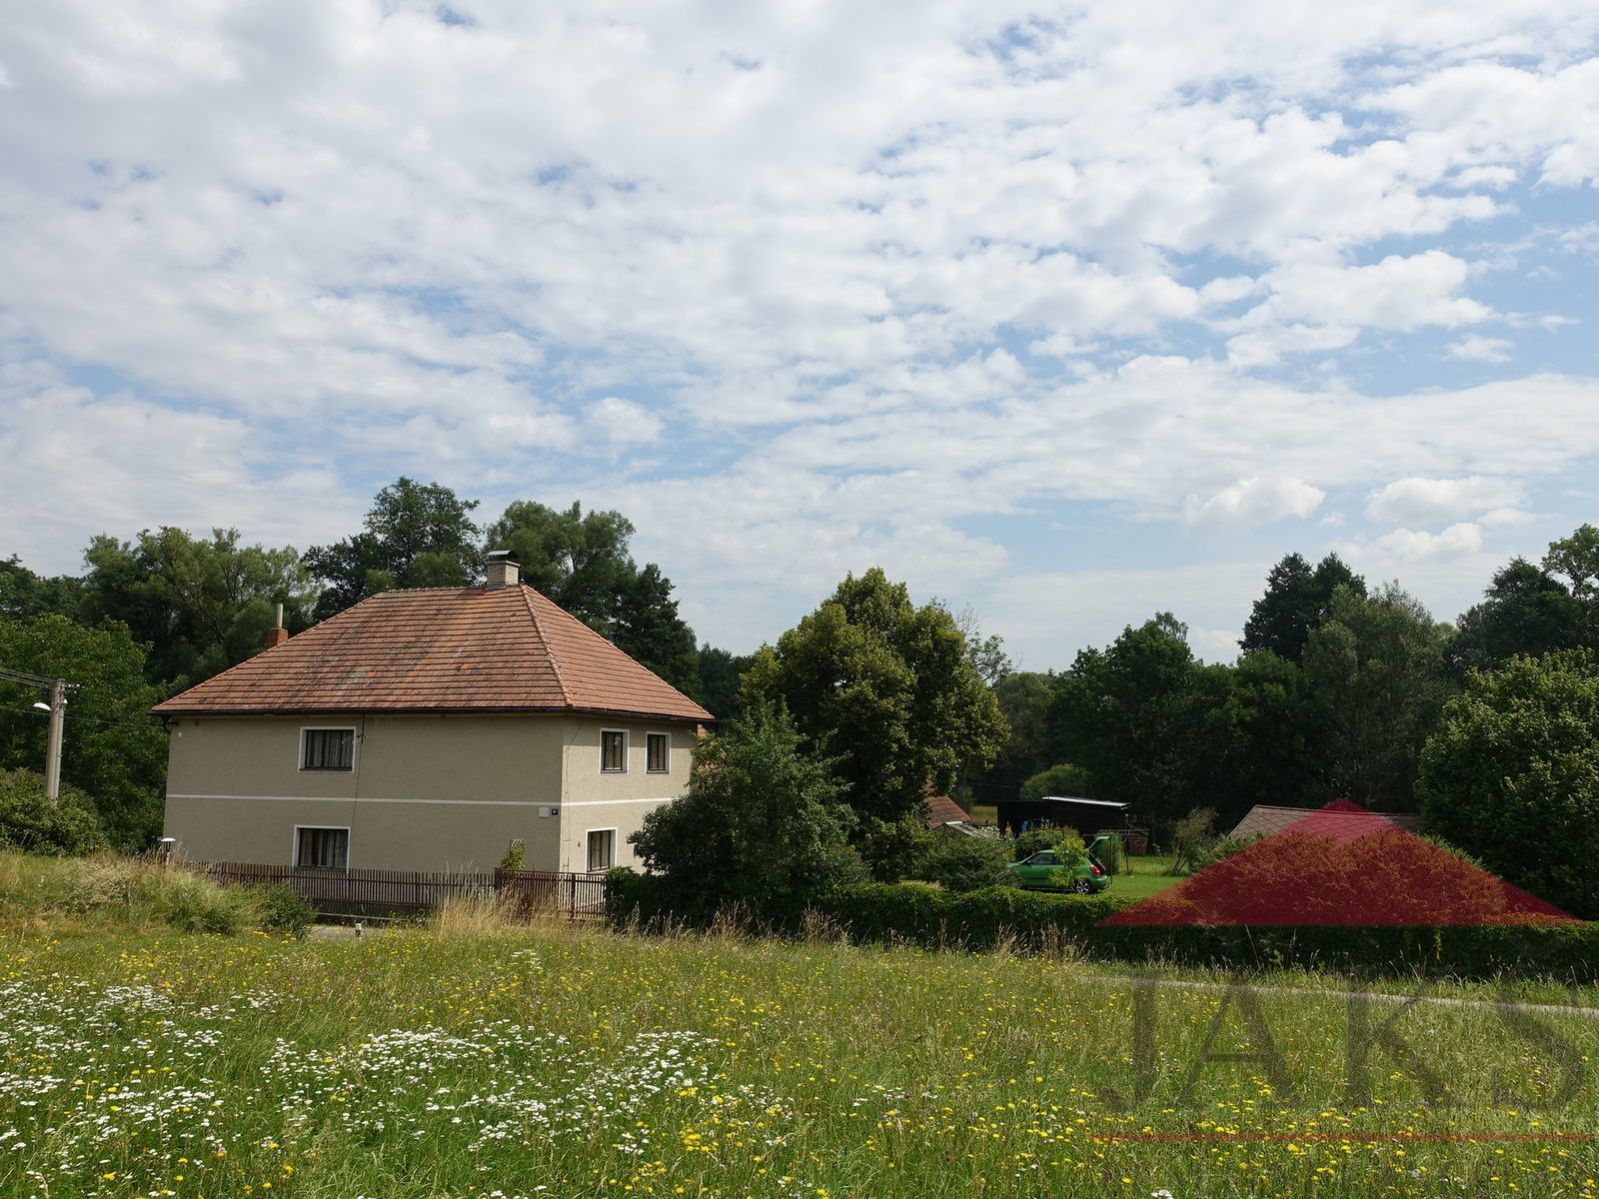 Rozsedly; dvougener. rodinný dům (195 m2) se stodolou s garáží a zahradou na konci obce s výhledem, obrázek č. 3